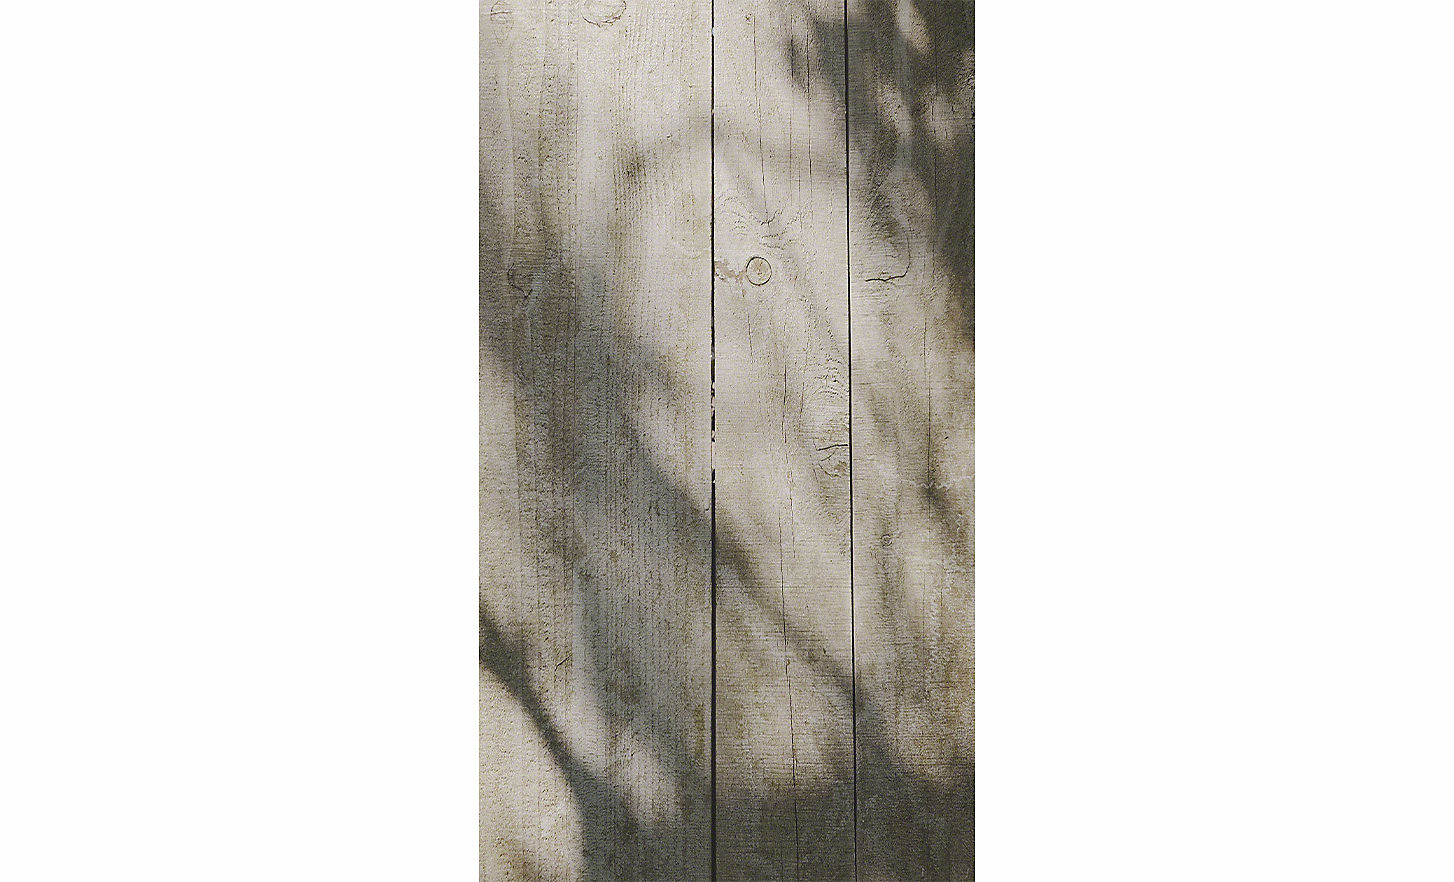 Image de planches en bois sur lesquelles un arbre projette son ombre